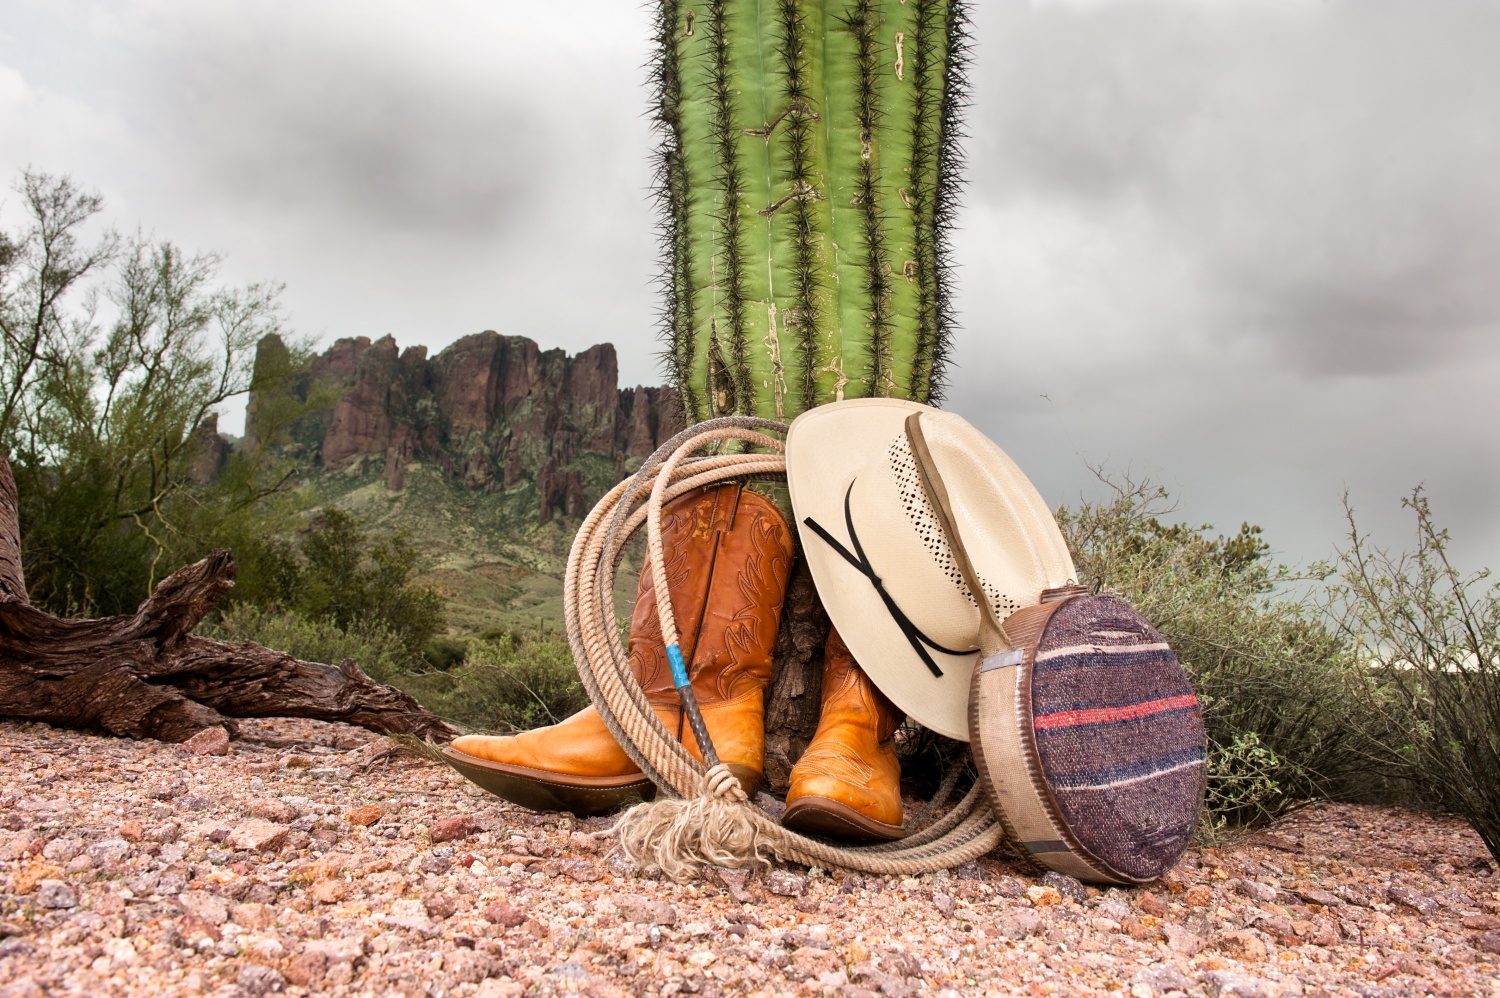 Fotografía de botas y sombrero de vaquero apoyadas sobre un cactus